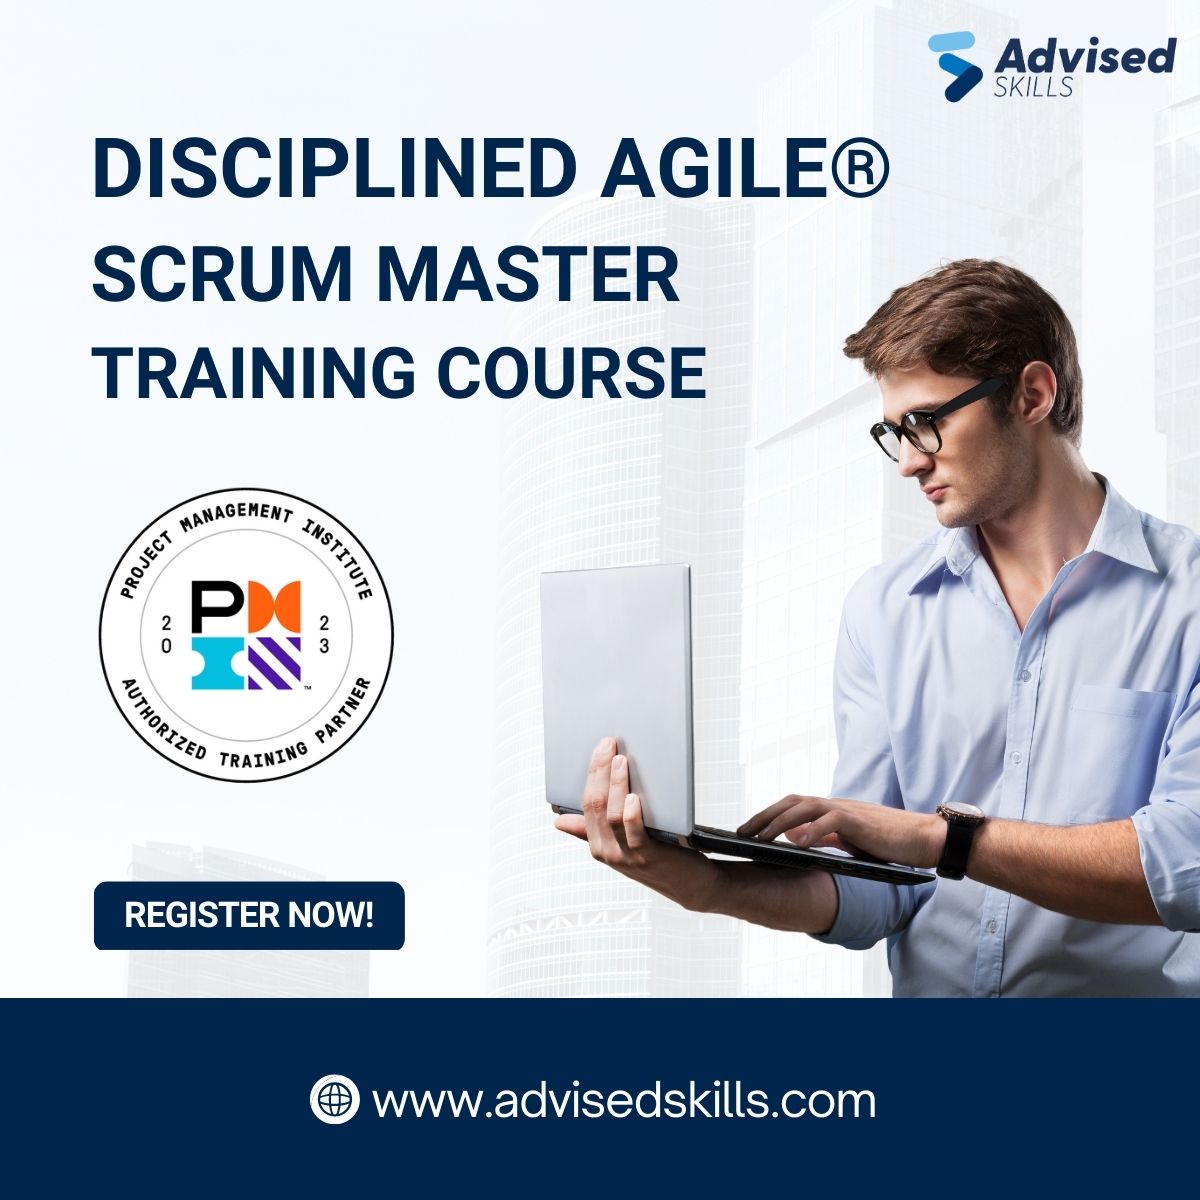 Disciplined Agile Scrum Master (DASM) Training Course